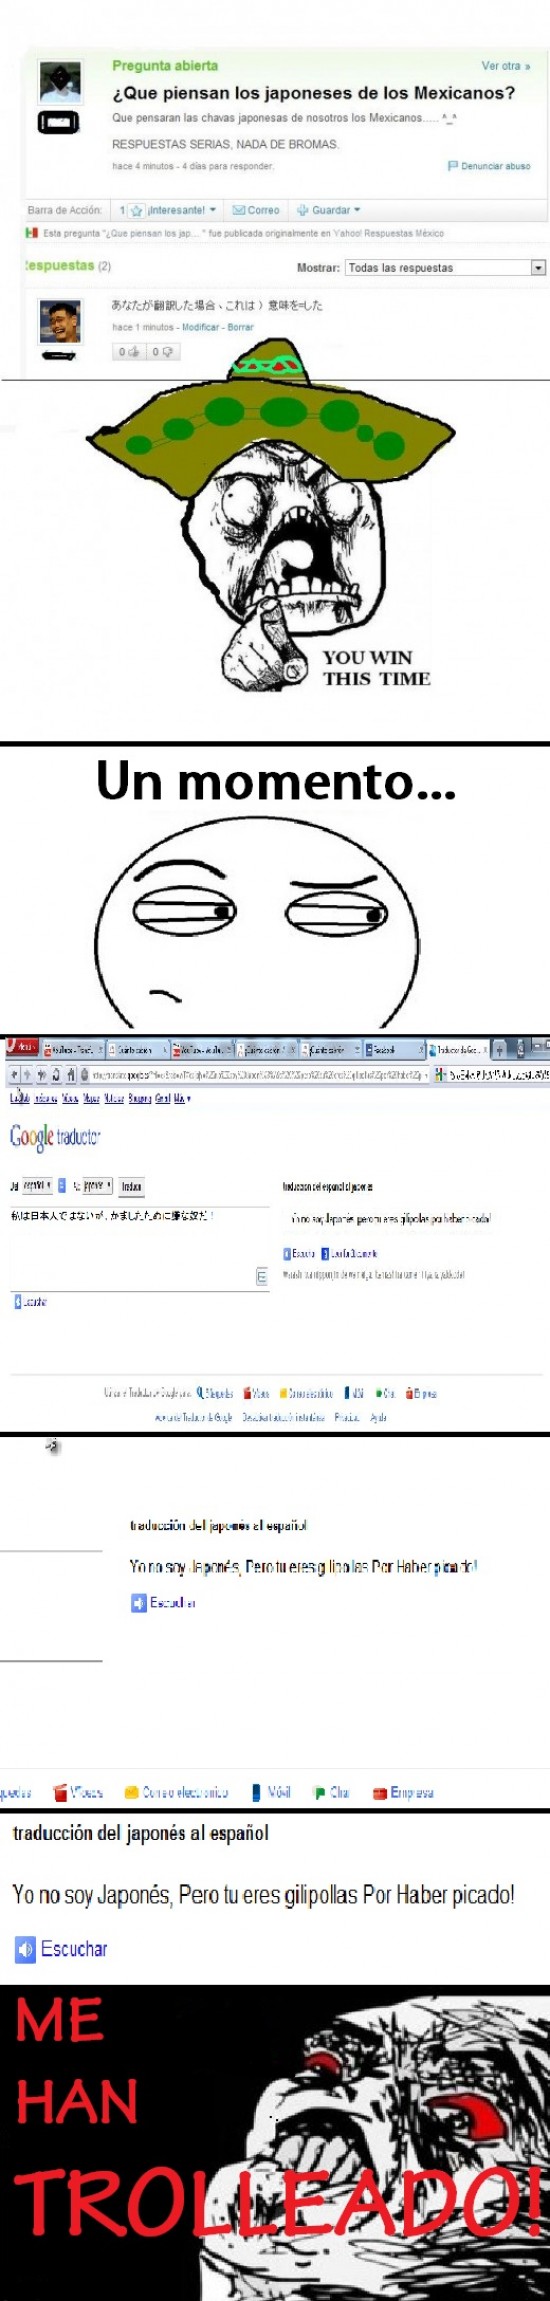 google,inglip,japones,respuestas,traductor,troll,trollear,yahoo